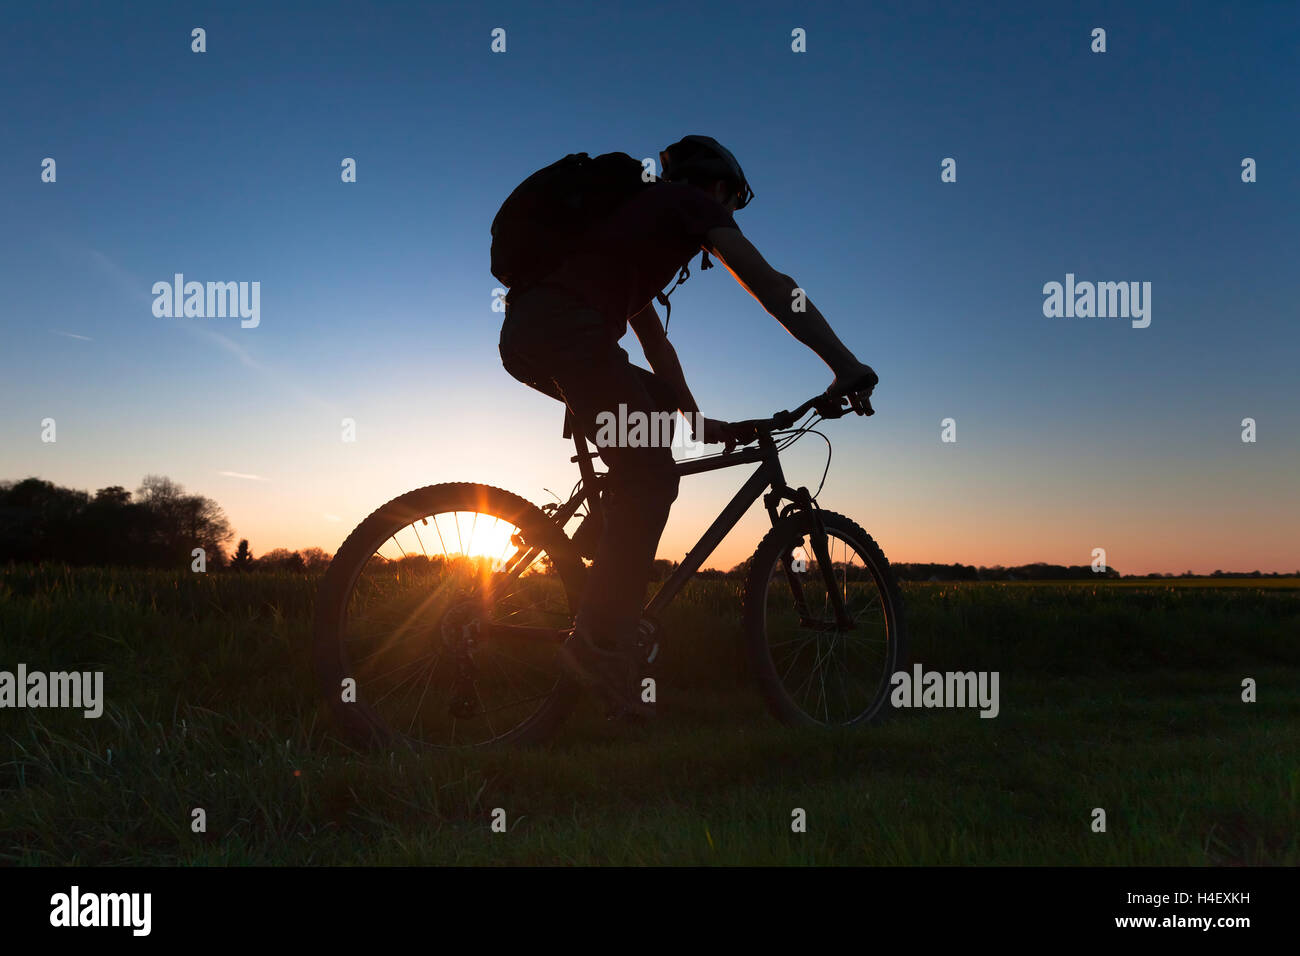 Adulto Joven montando bicicleta cross-country al atardecer Foto de stock